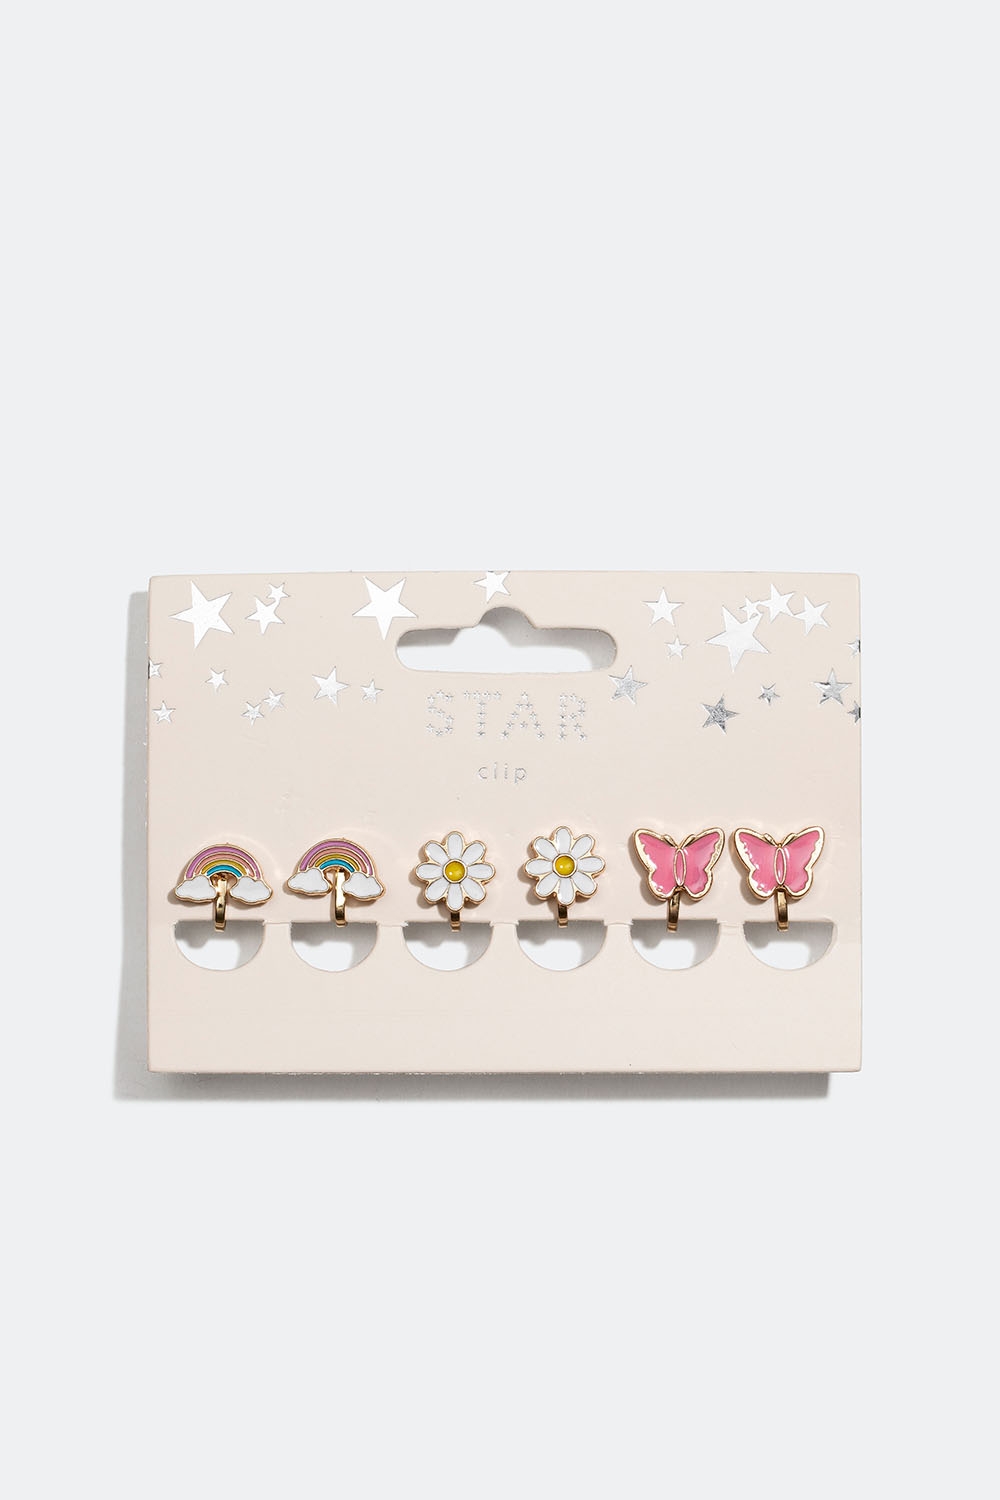 Clipsøreringe med regnbuer, blomster og sommerfugle, 3-pak i gruppen Børn / Børnesmykker / Børneøreringe hos Glitter (402000029900)